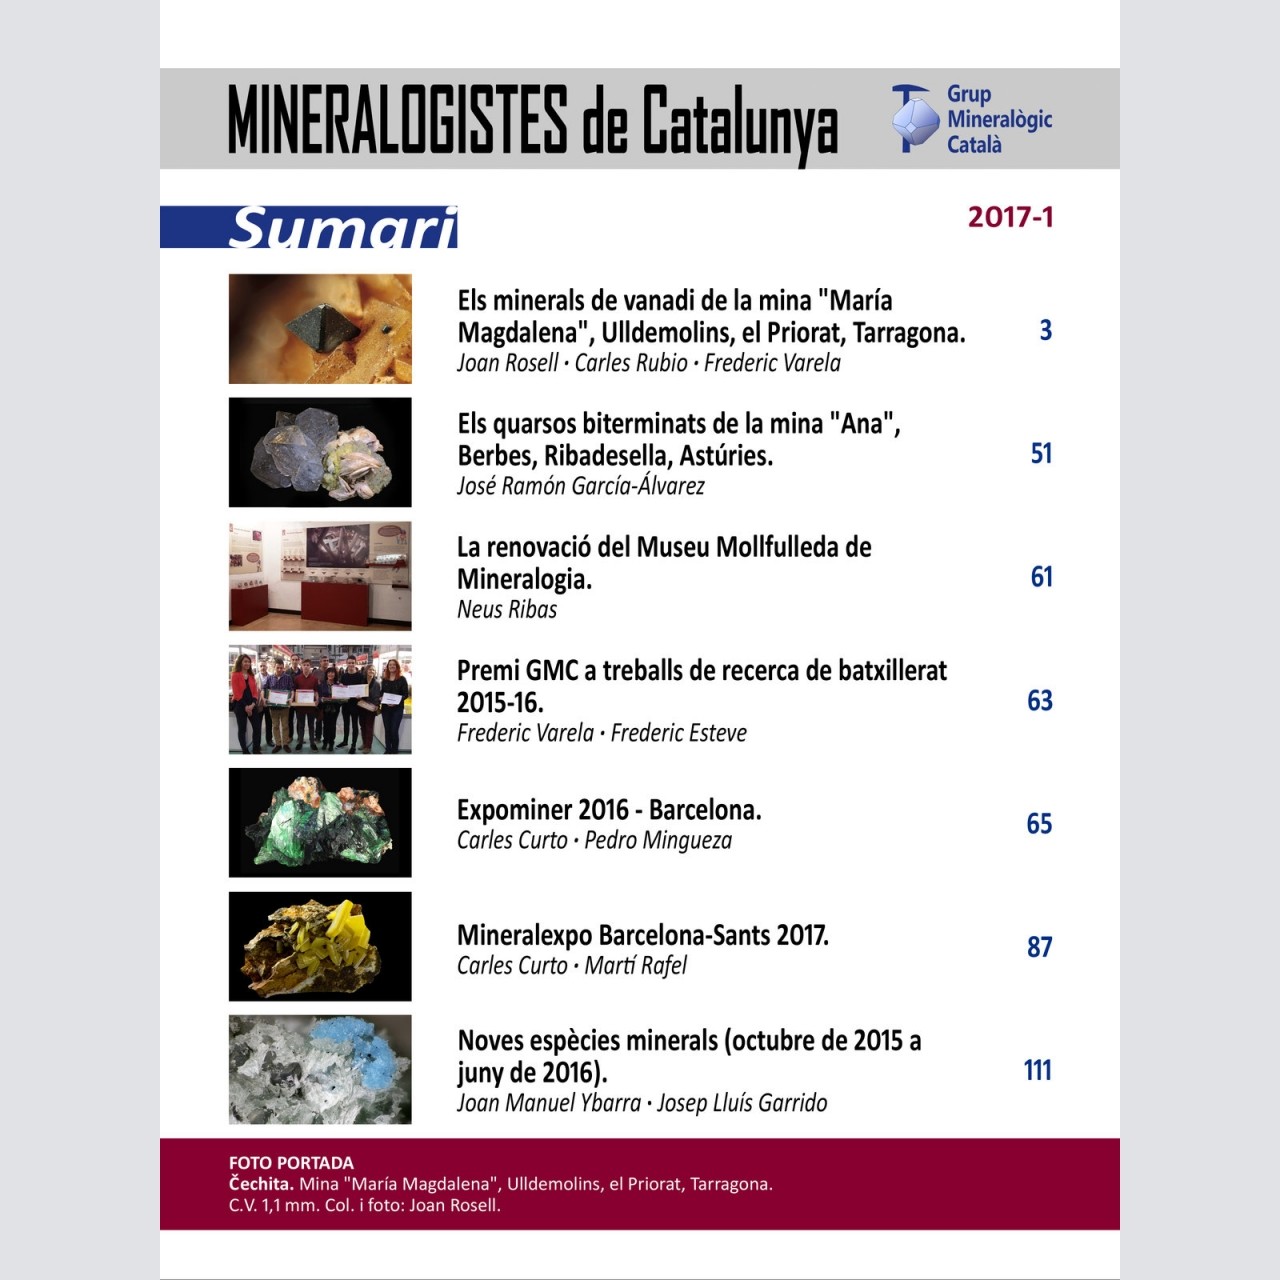 Mineralogistes de Catalunya (2017-1)